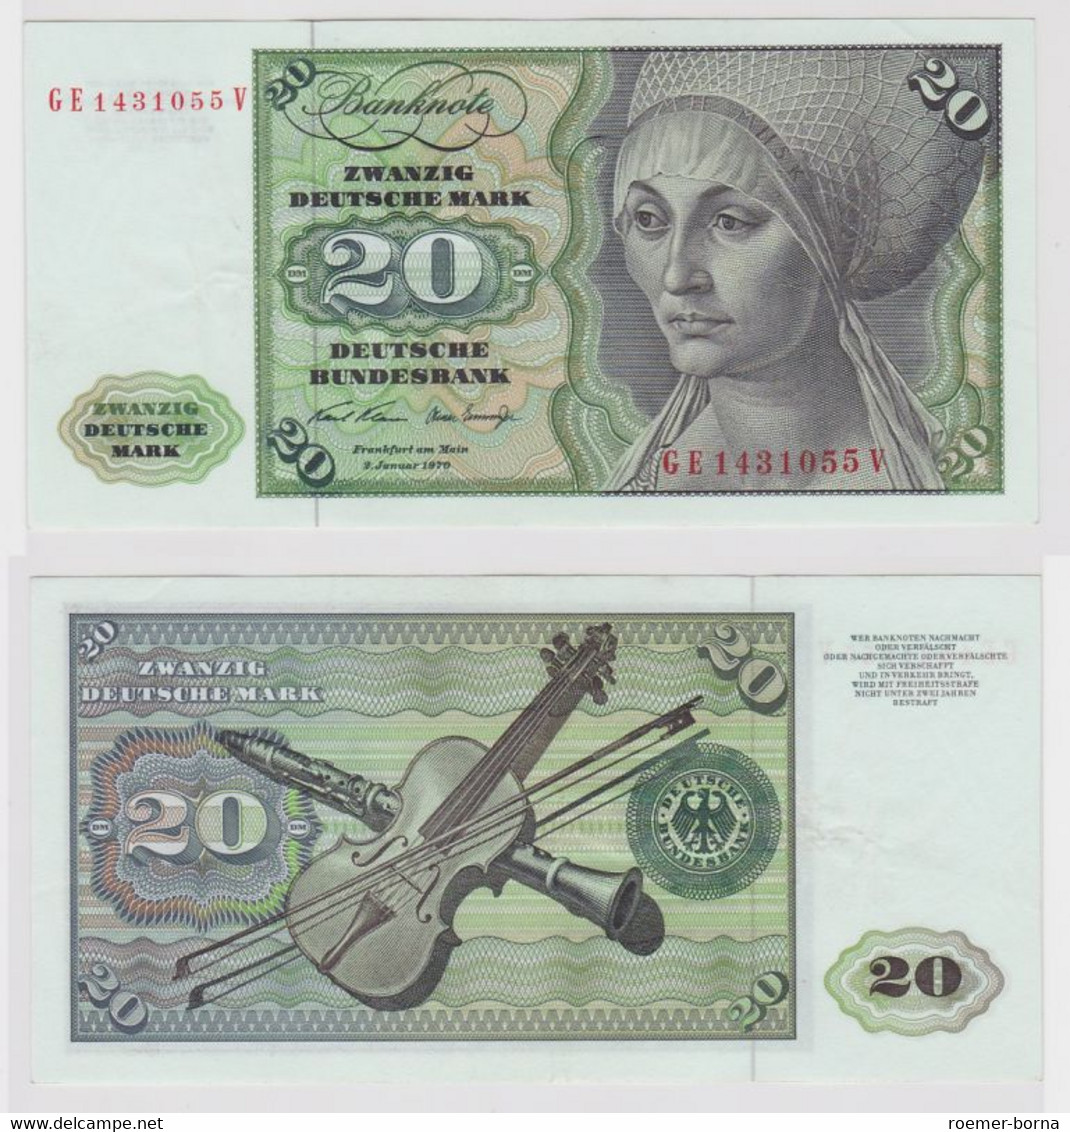 T115557 Banknote 20 DM Deutsche Mark Ro. 271b Schein 2.Jan. 1970 KN GE 1431055 V - 20 Deutsche Mark